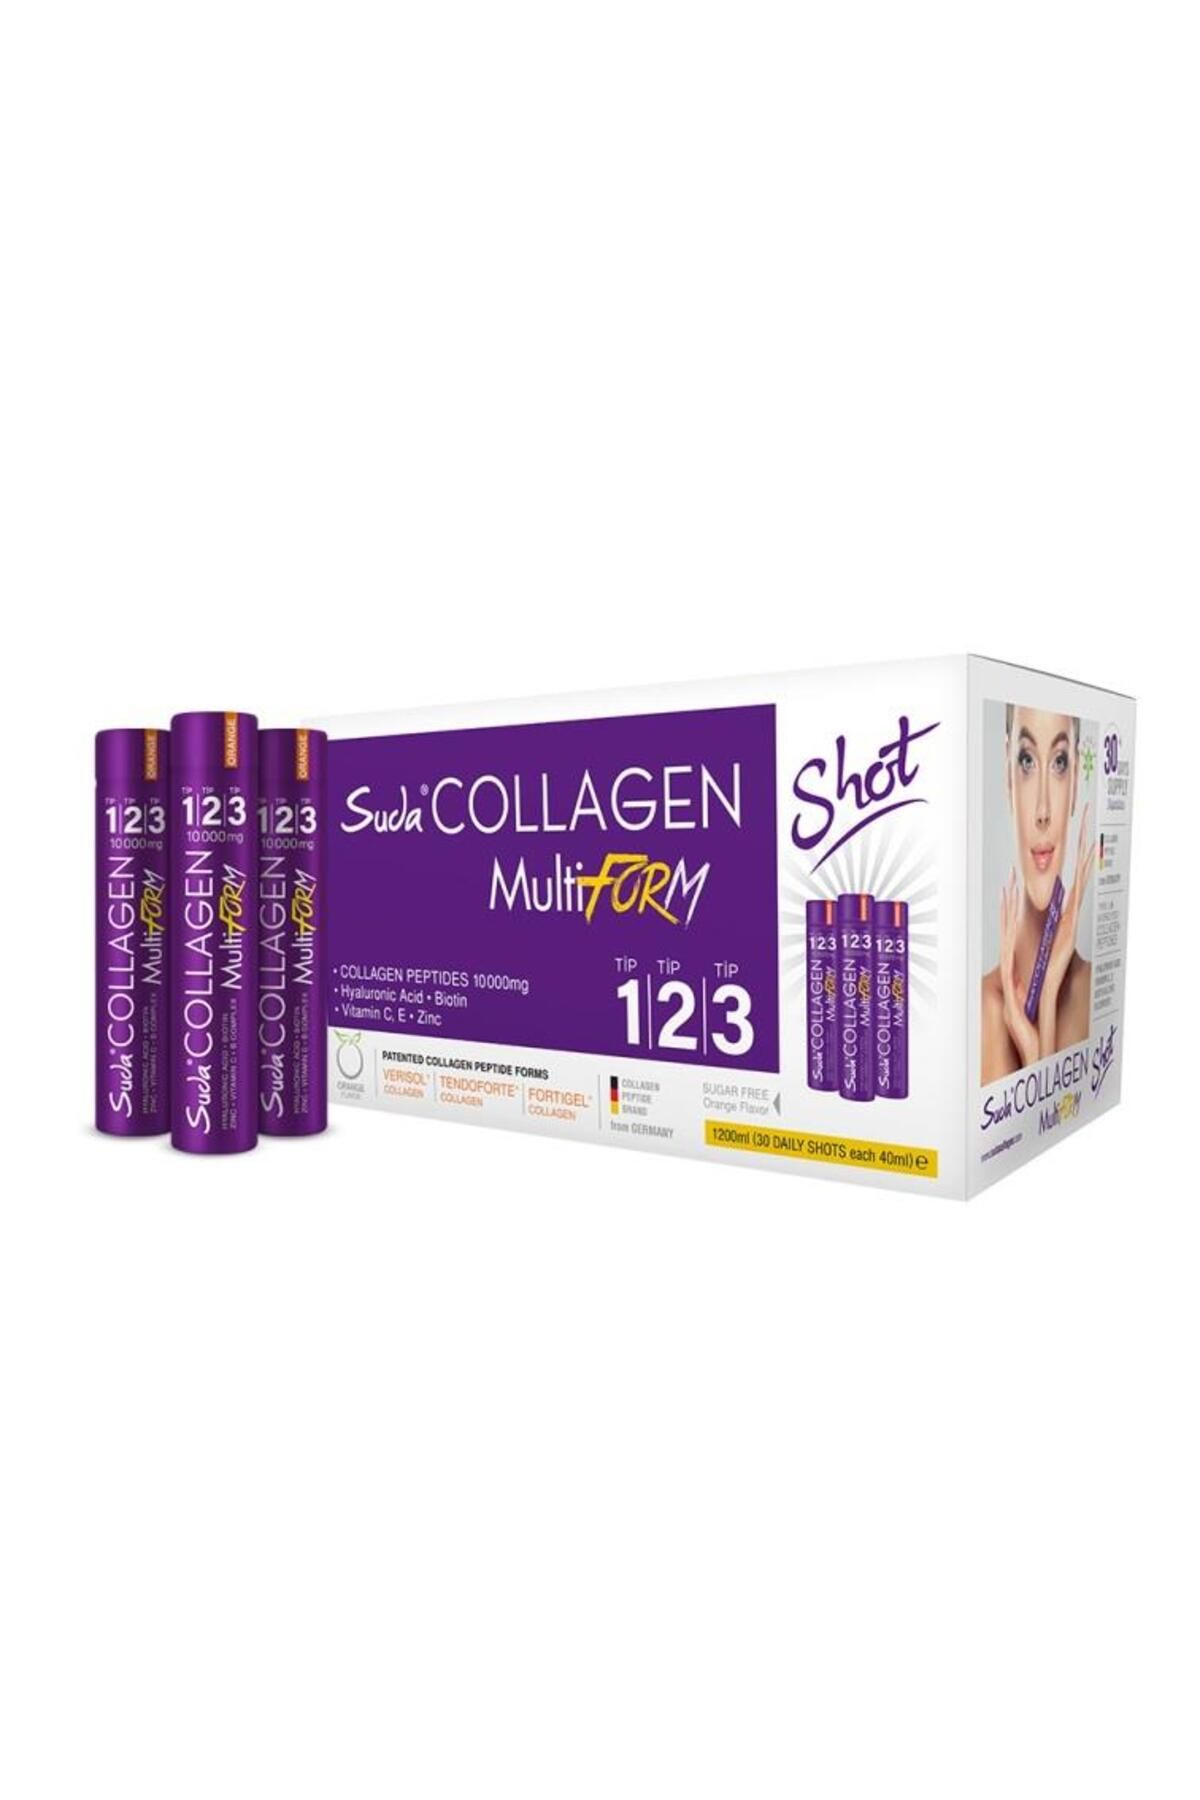 Suda Collagen Multiform Portakallı 30 Shot